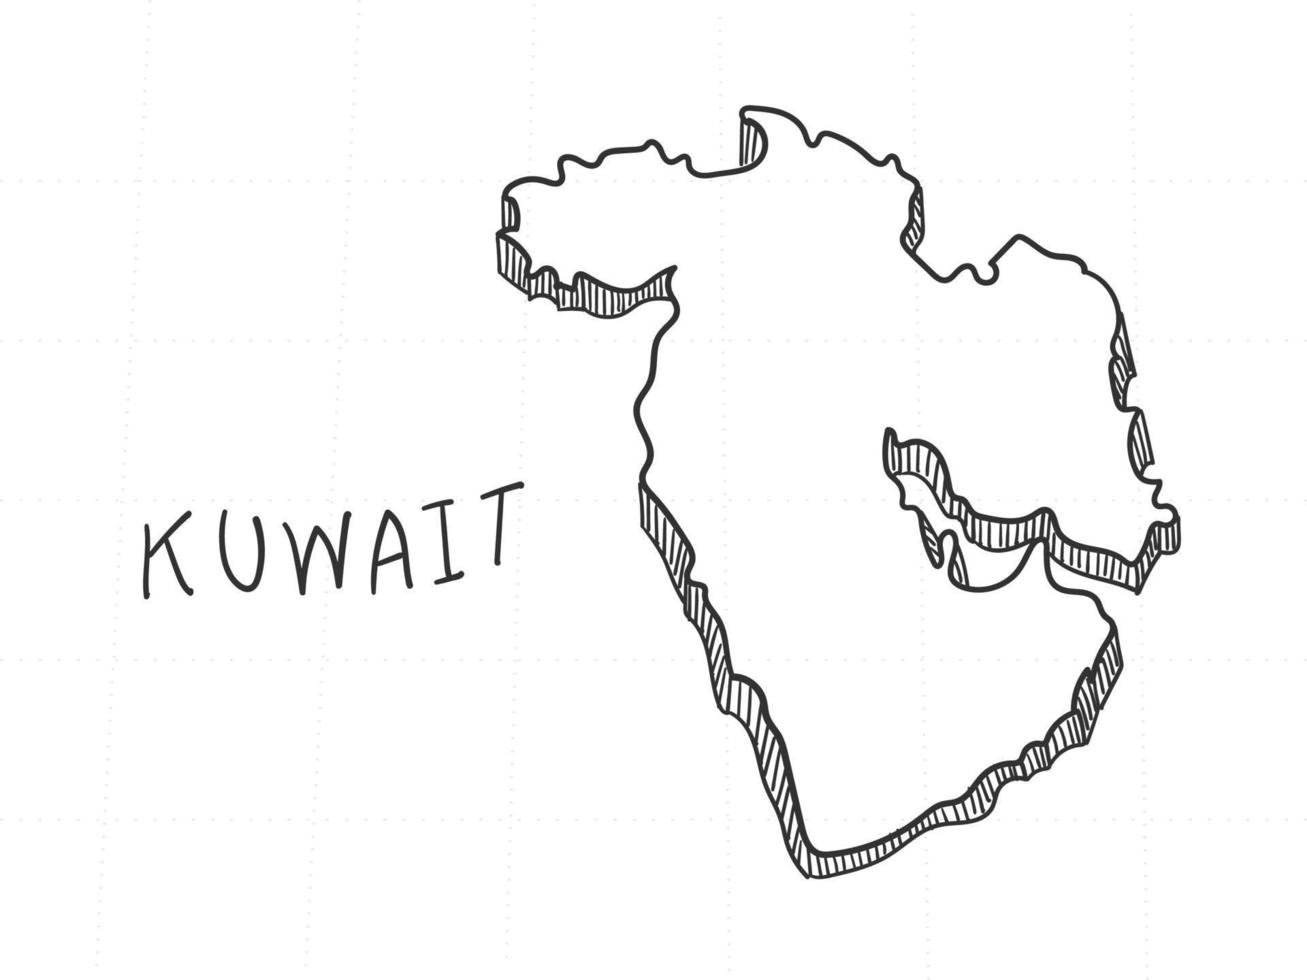 dibujado a mano del mapa 3d de kuwait sobre fondo blanco. vector